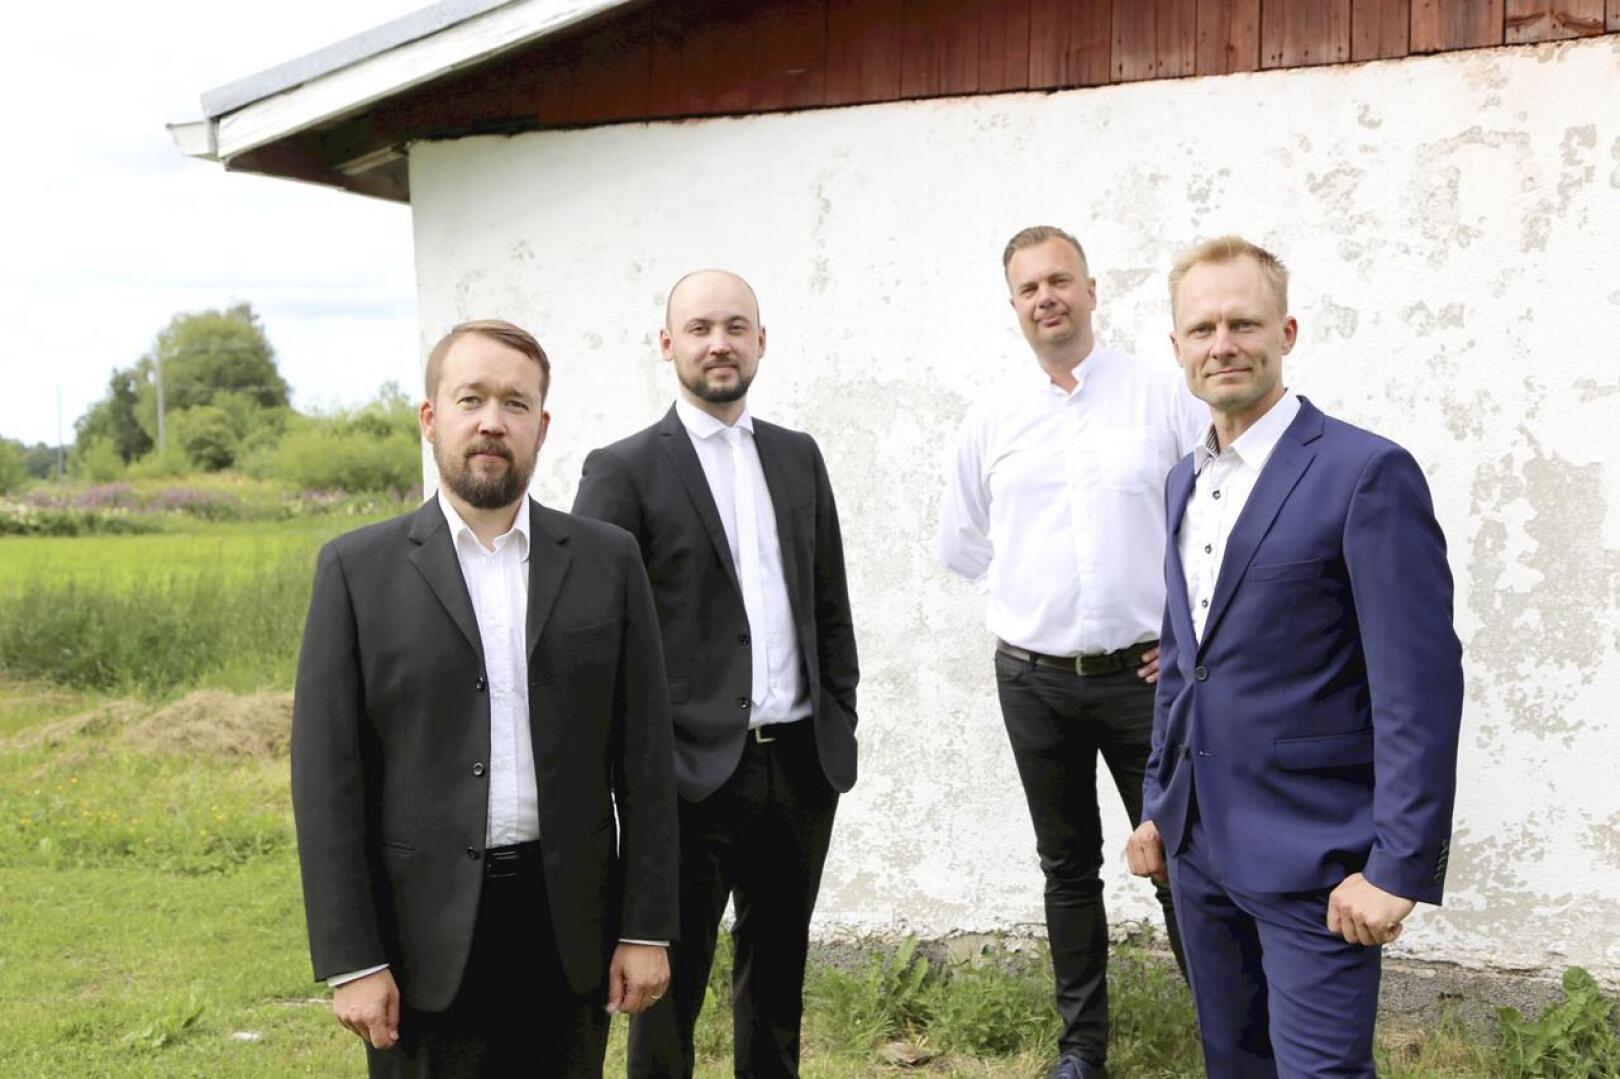 Janne Torvikoski, Mauri Uusitalo, Rasmus Tammik ja Mika Jämsä soittavat Eldankassa. Heille bändi on vakavahenkinen harrastus, jossa saa luoda omaa musiikkia vastapainona muulle työlle. 